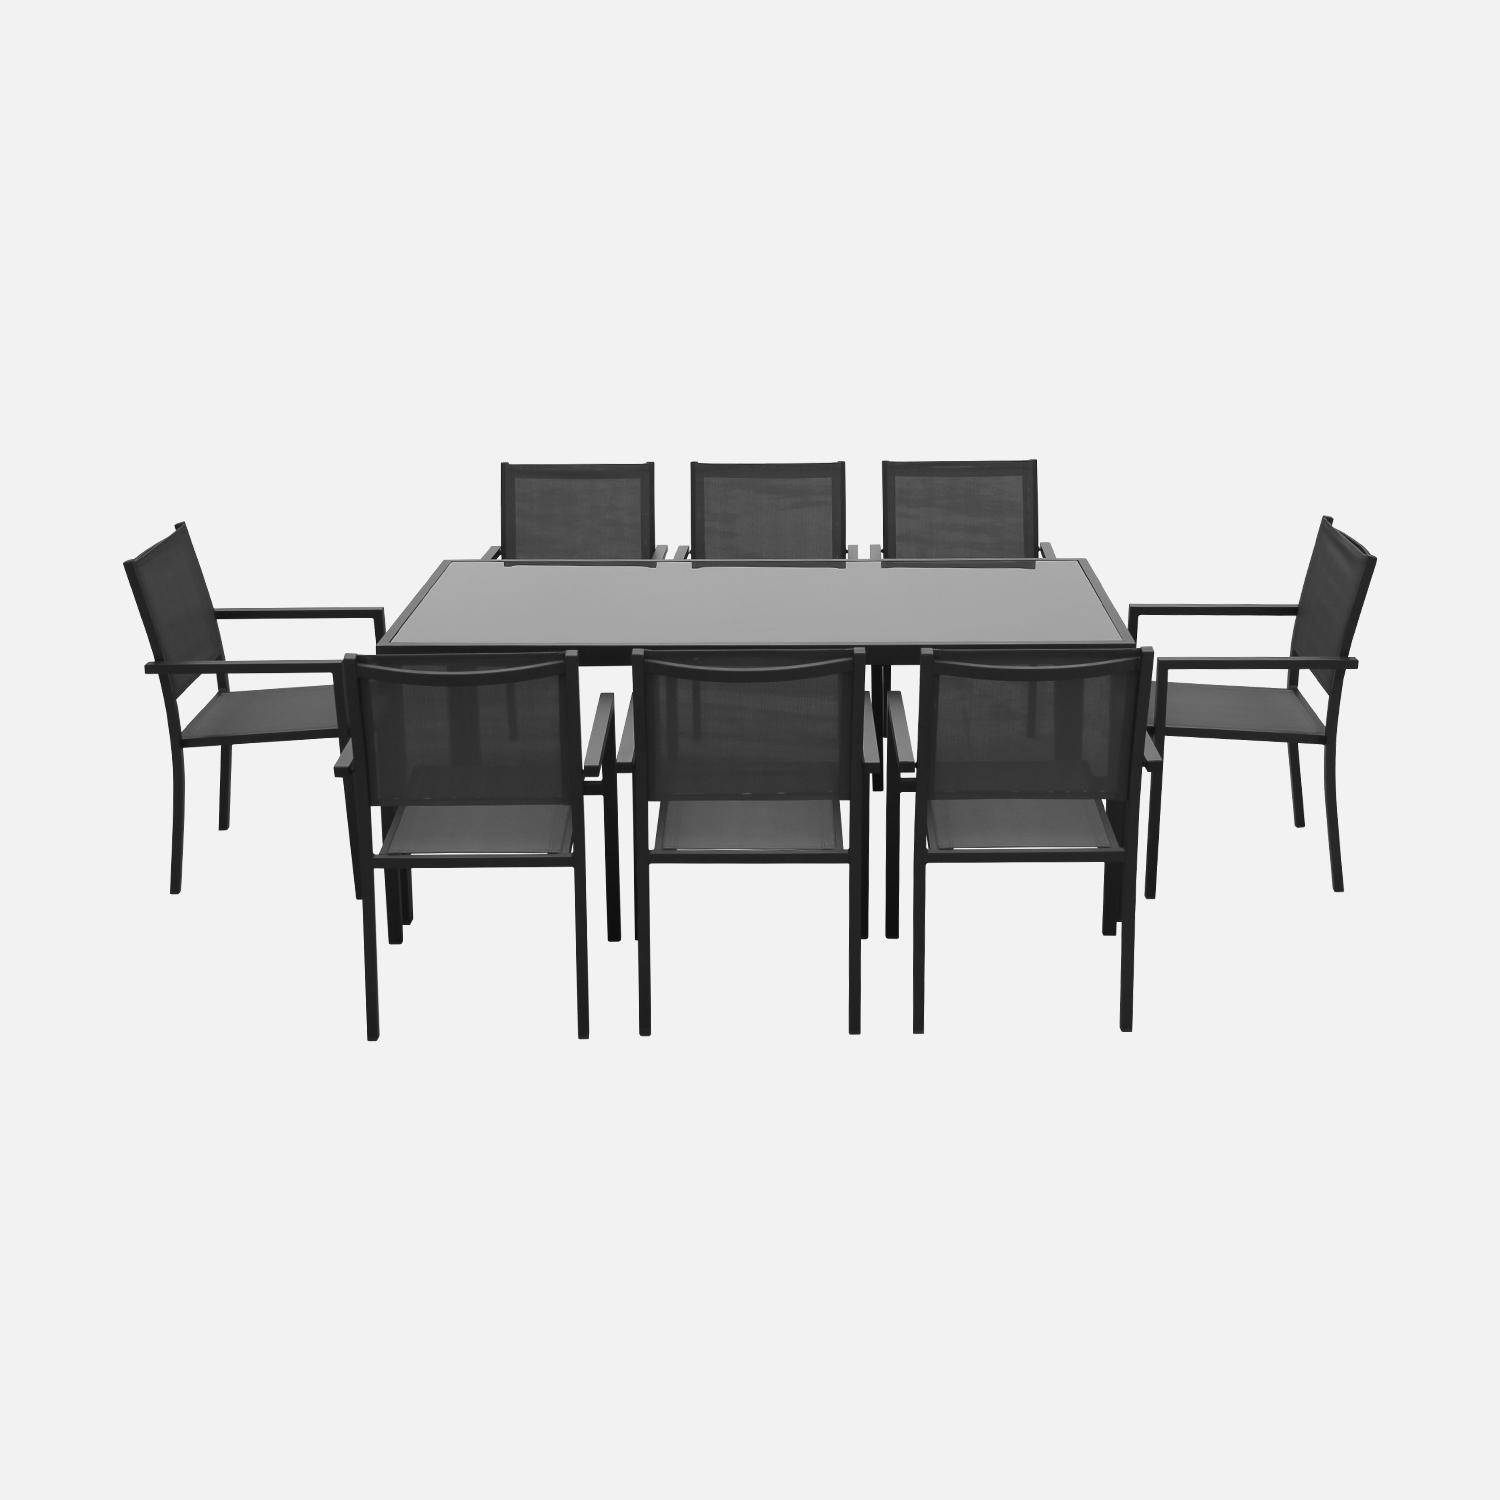 Salon de jardin en aluminium et textilène - Capua 180cm - Anthracite, gris - 8 places - 1 grande table rectangulaire, 8 fauteuils empilables Photo3